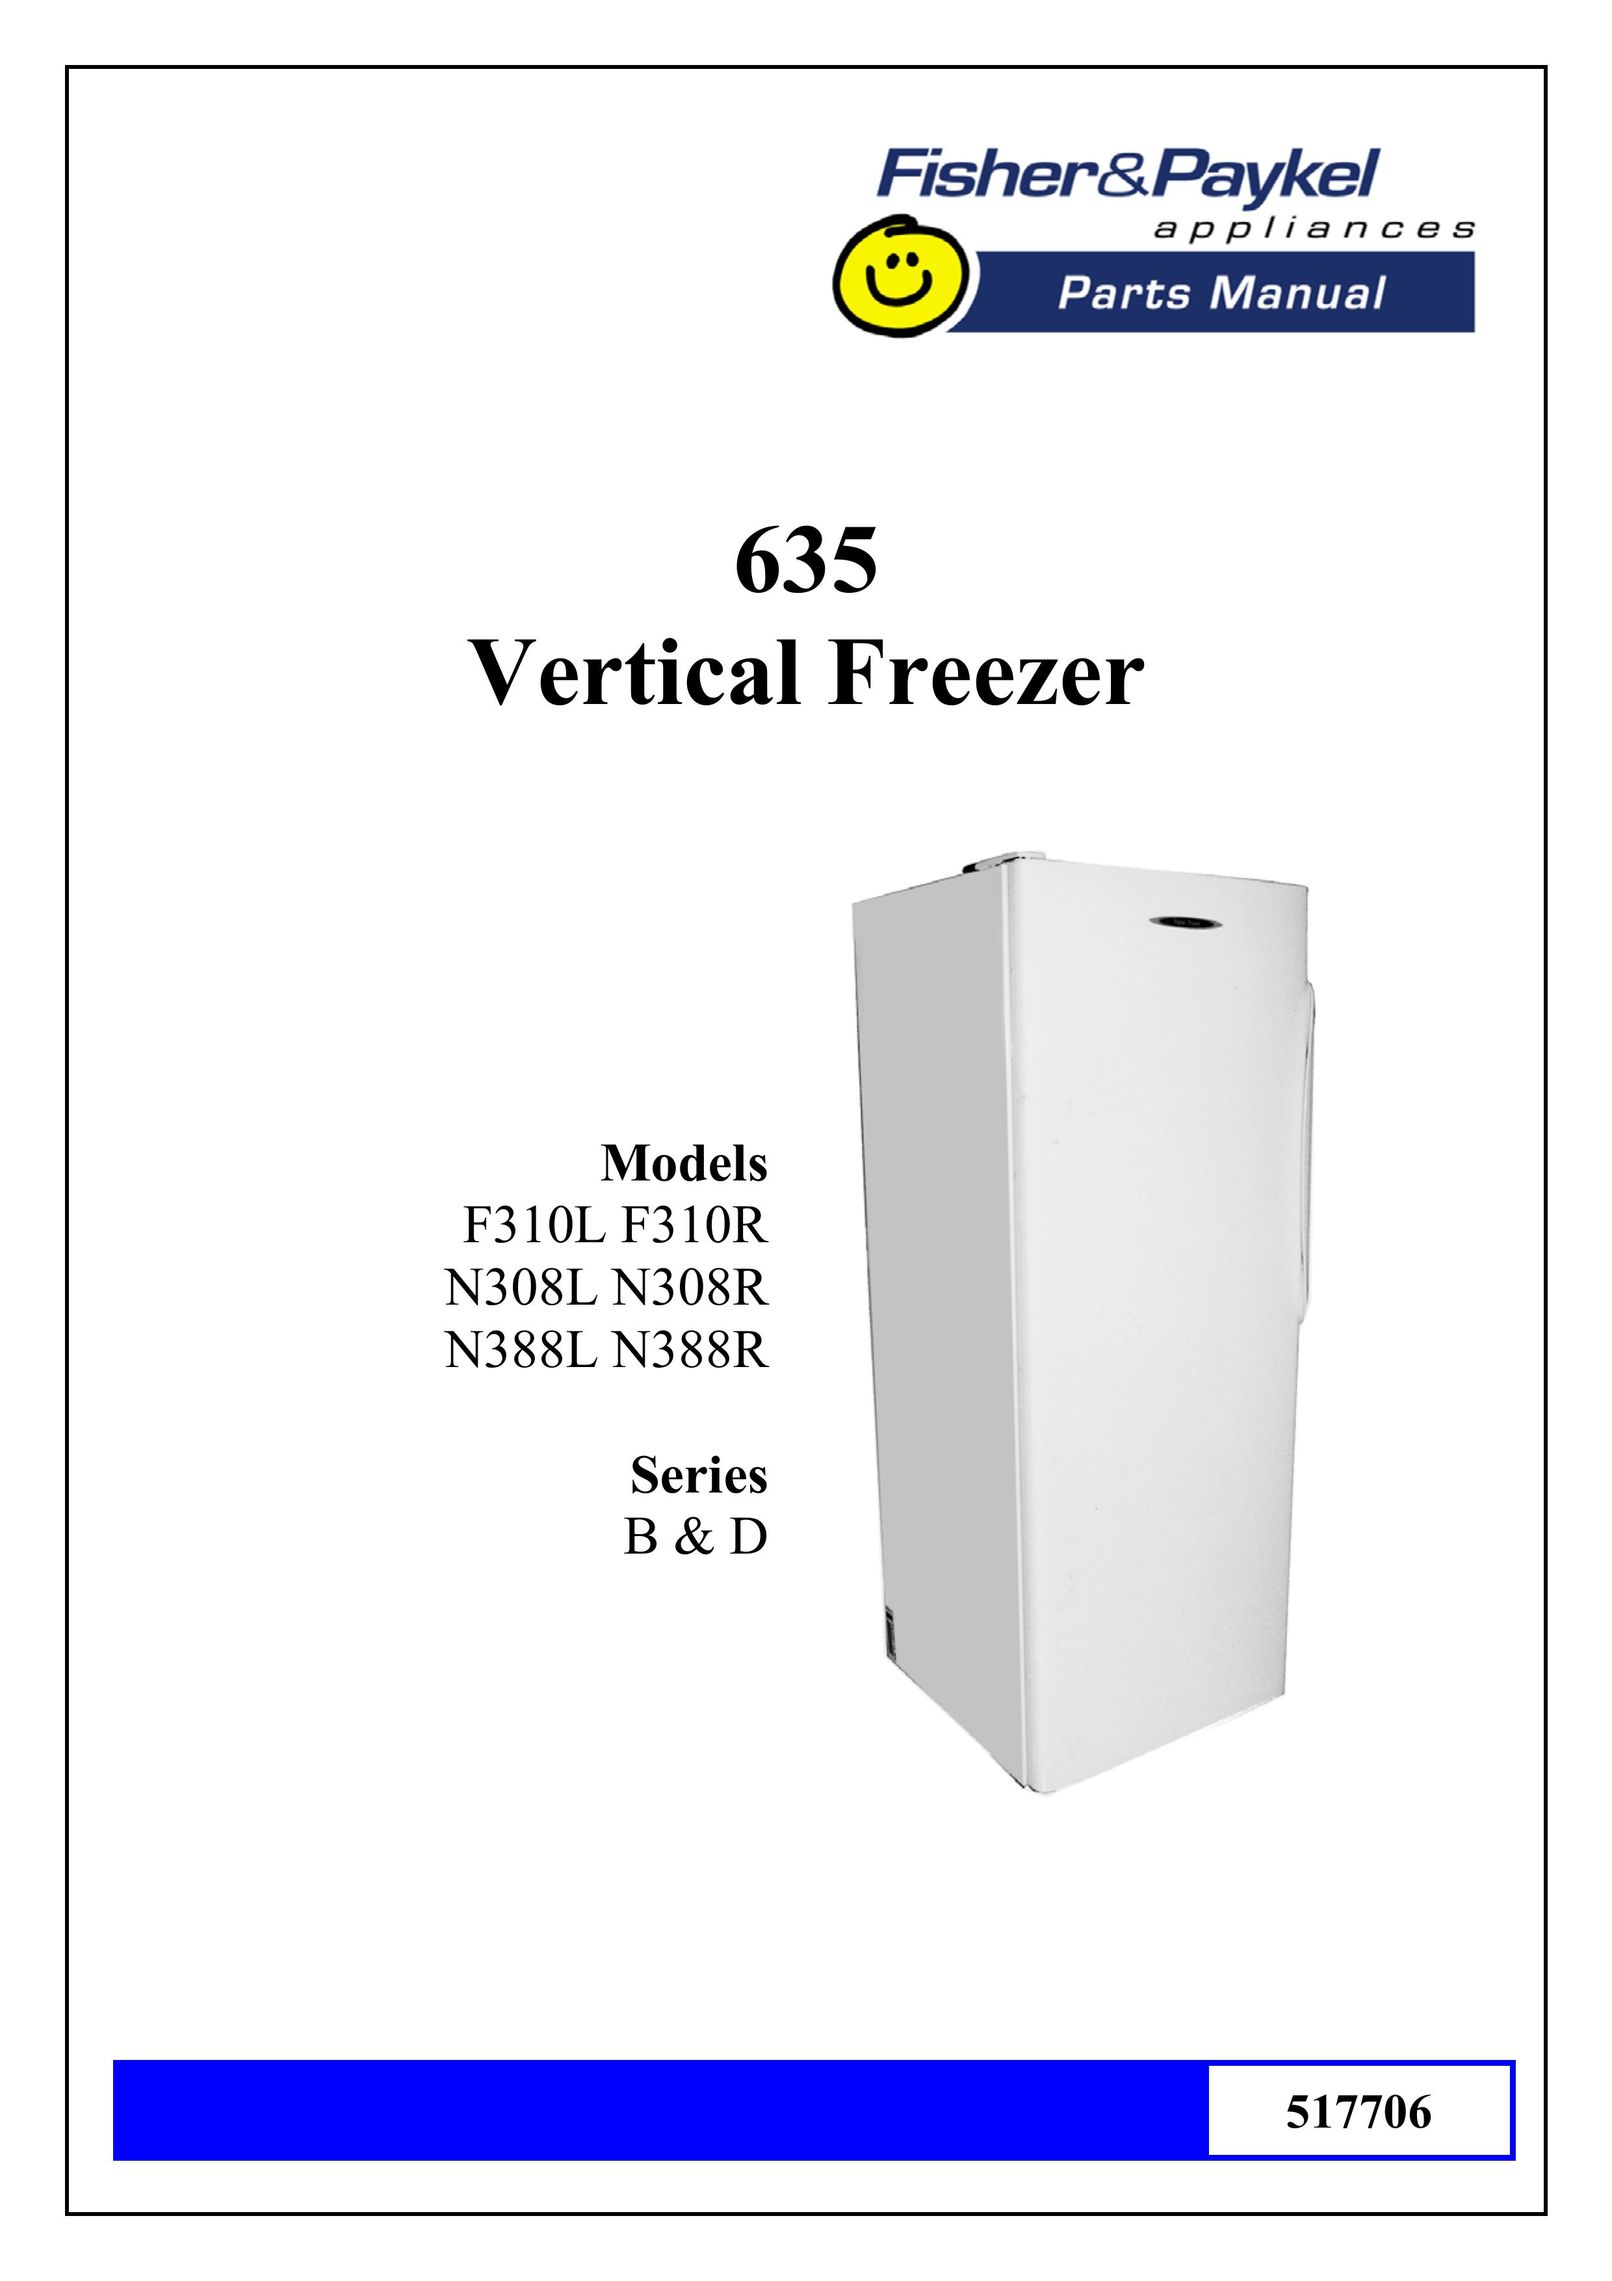 Fisher & Paykel N388R series B&D Freezer User Manual